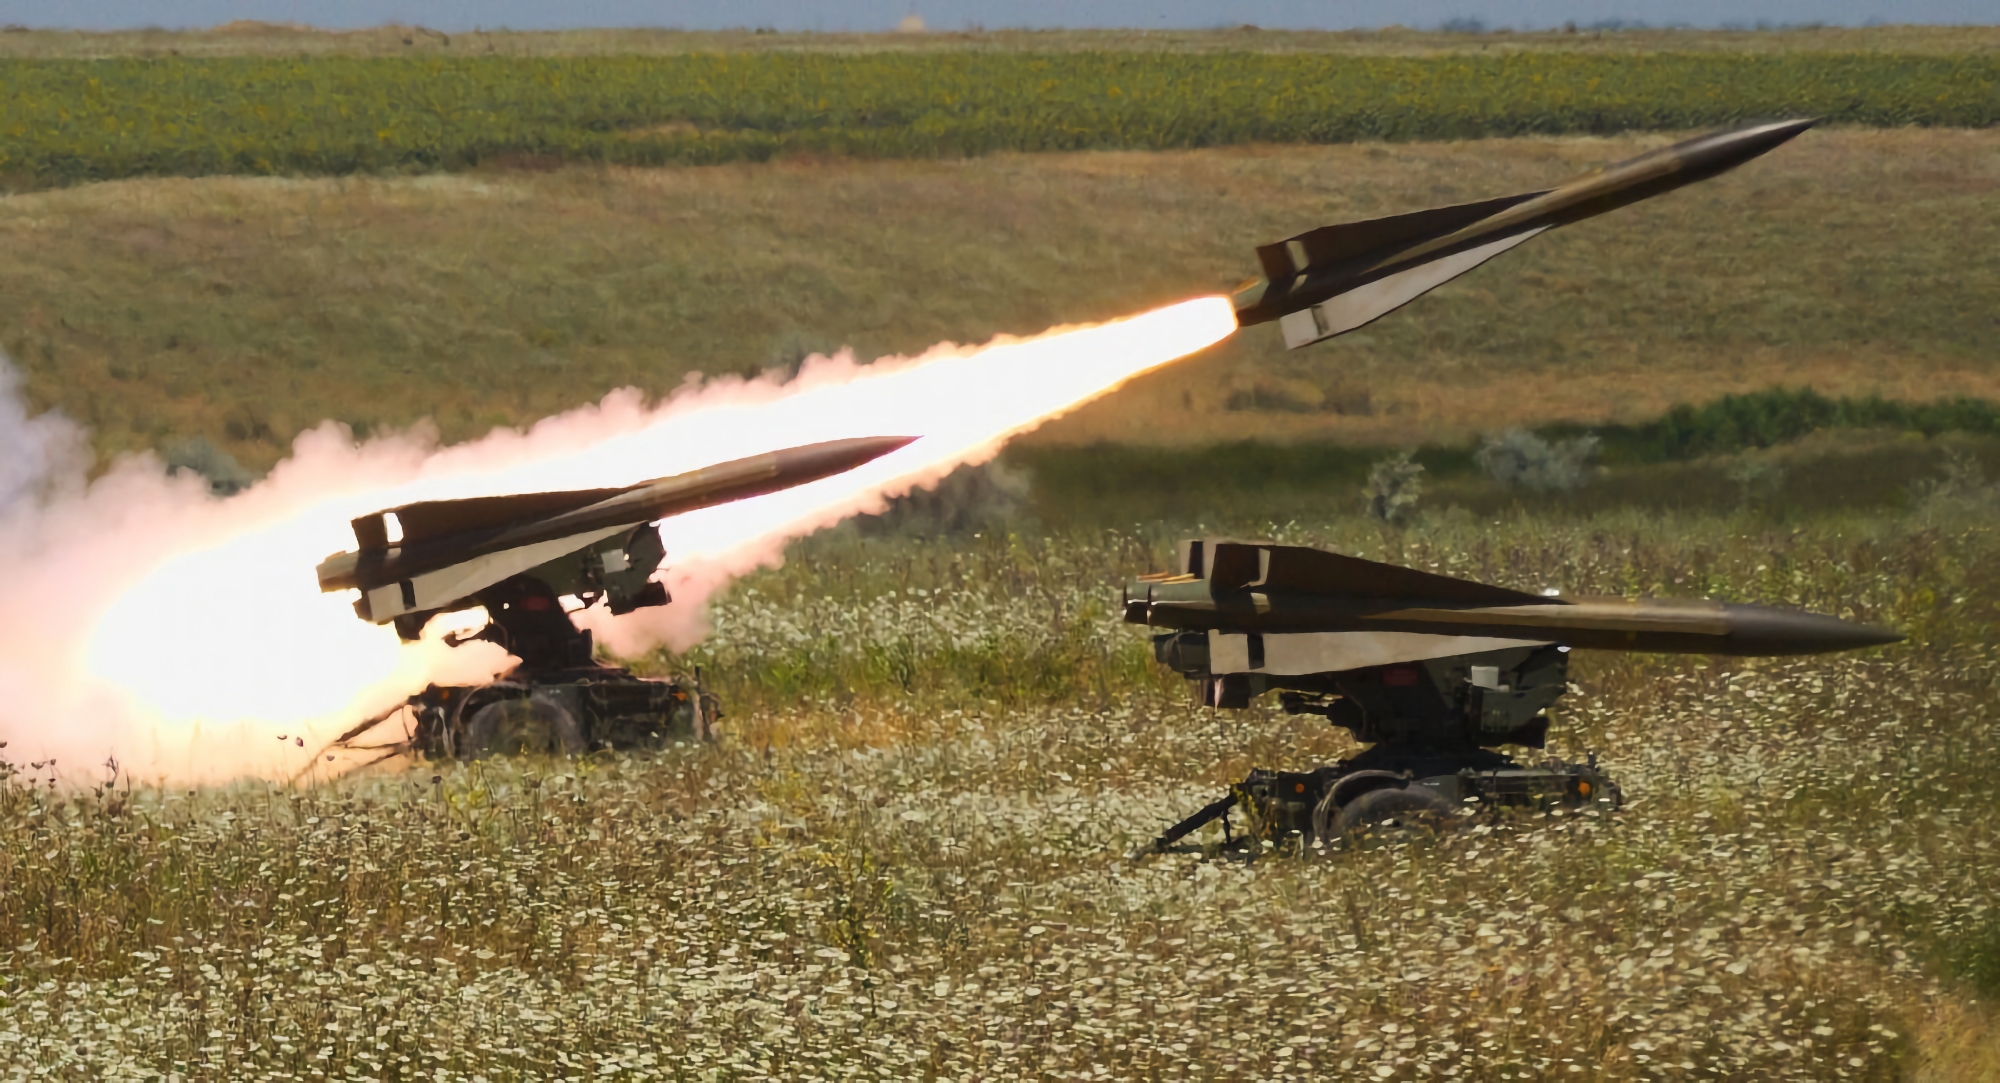 Spanien overfører 6 affyringsramper til MIM-23 Hawk jord-til-luft missilsystem til Ukraine